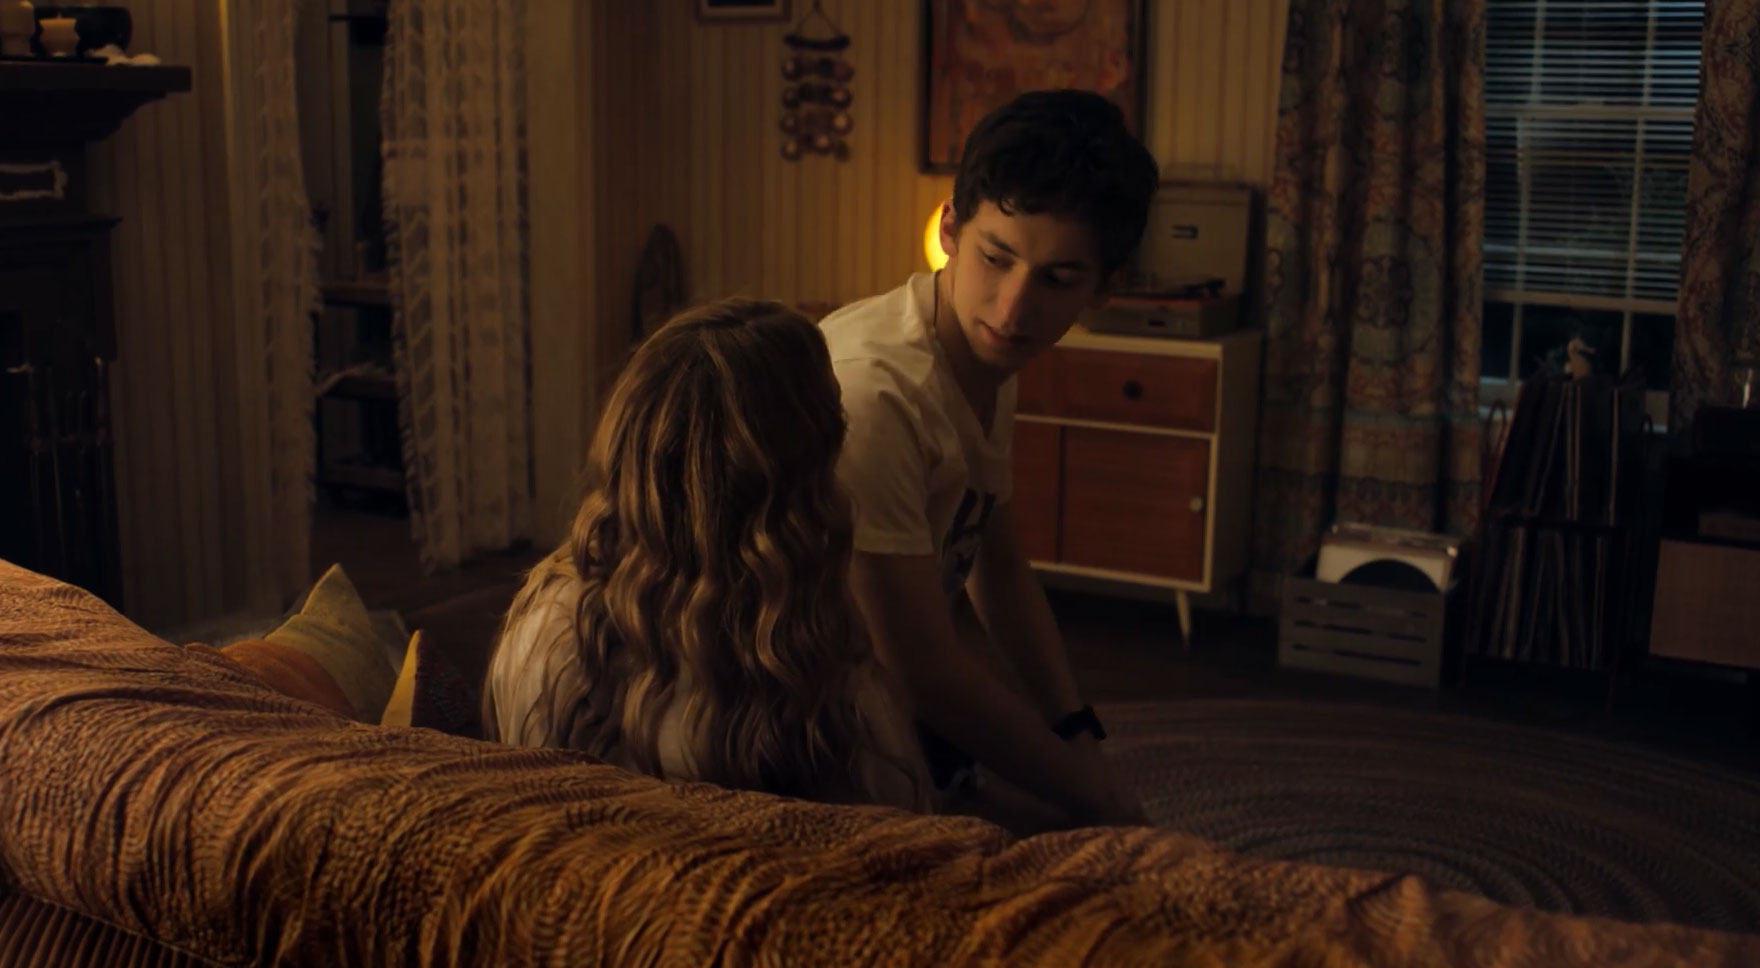 Fidanzata in affitto, scena da trailer film con Jennifer Lawrence